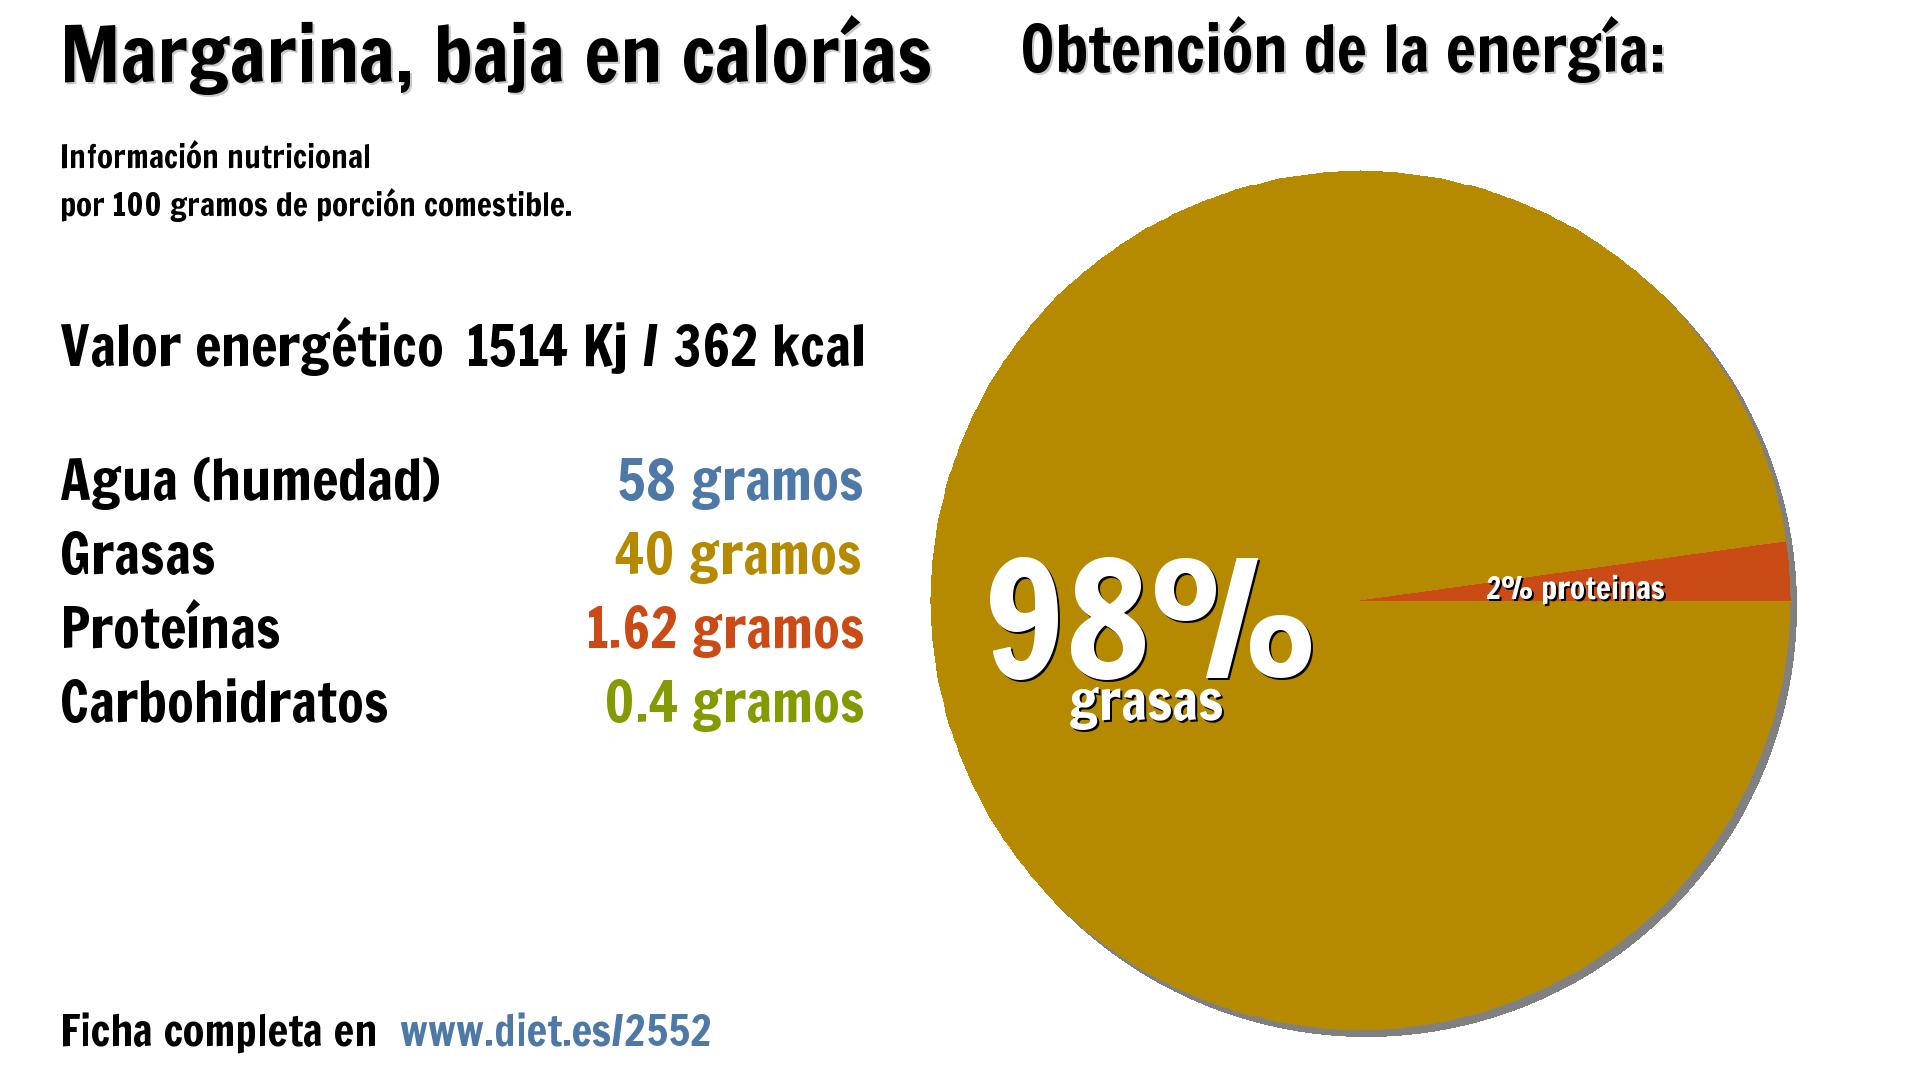 Margarina, baja en calorías: energía 1514 Kj, agua 58 g., grasas 40 g. y proteínas 2 g.